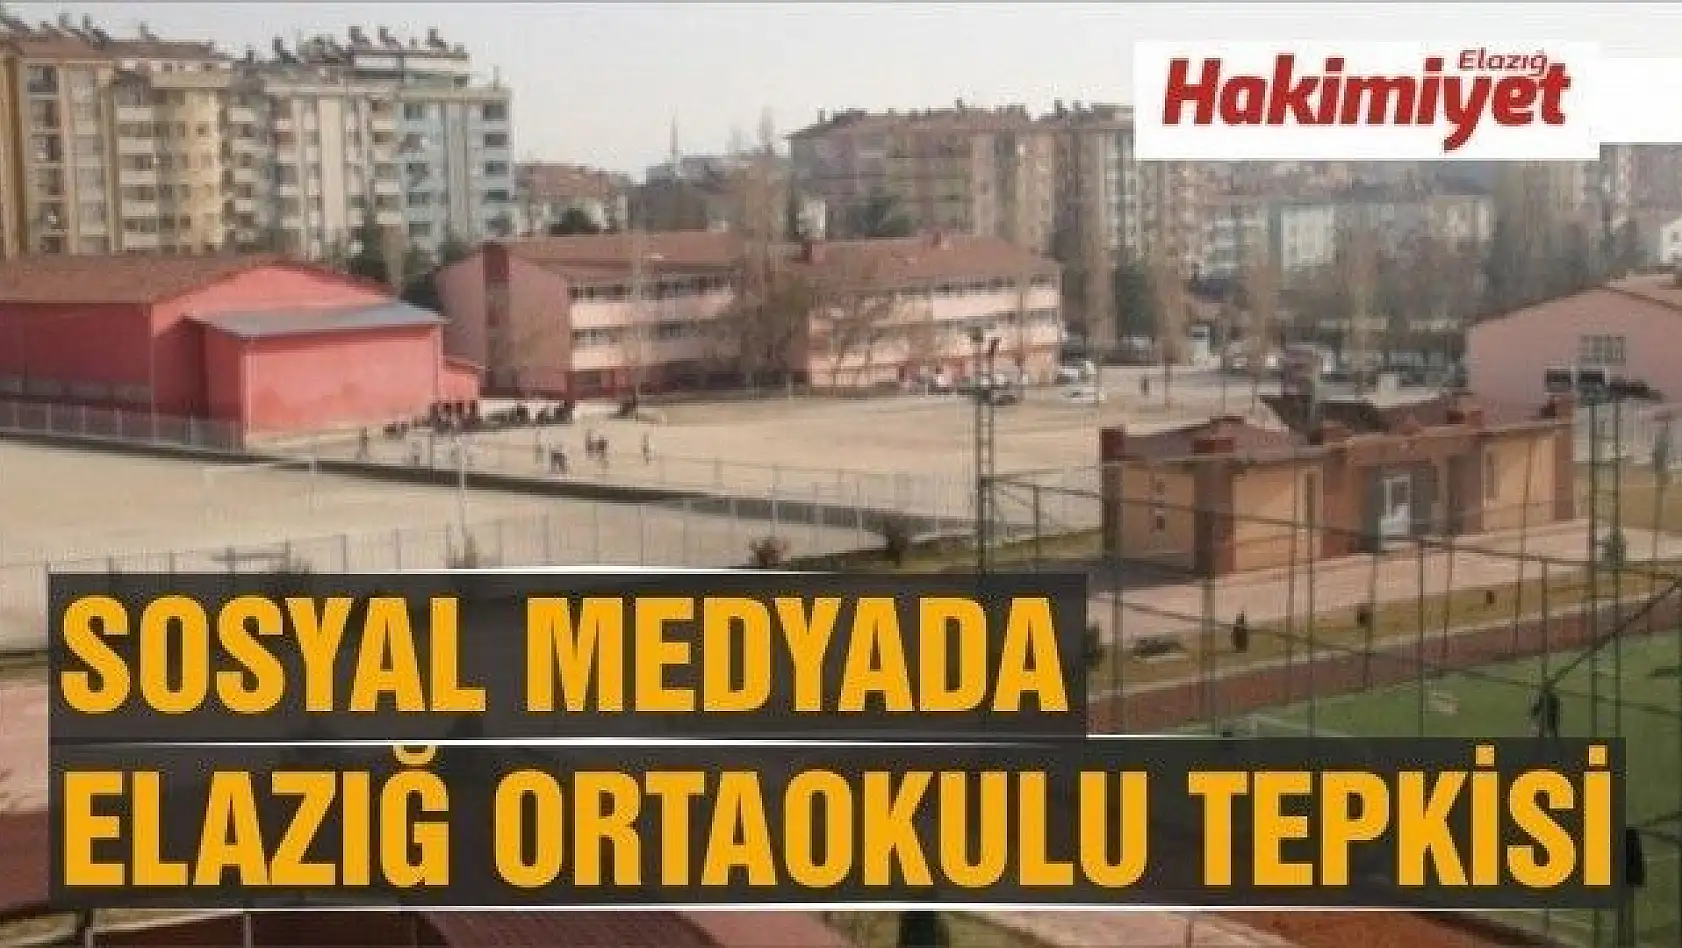 Sosyal medyada Elazığ Ortaokulu tepkisi!